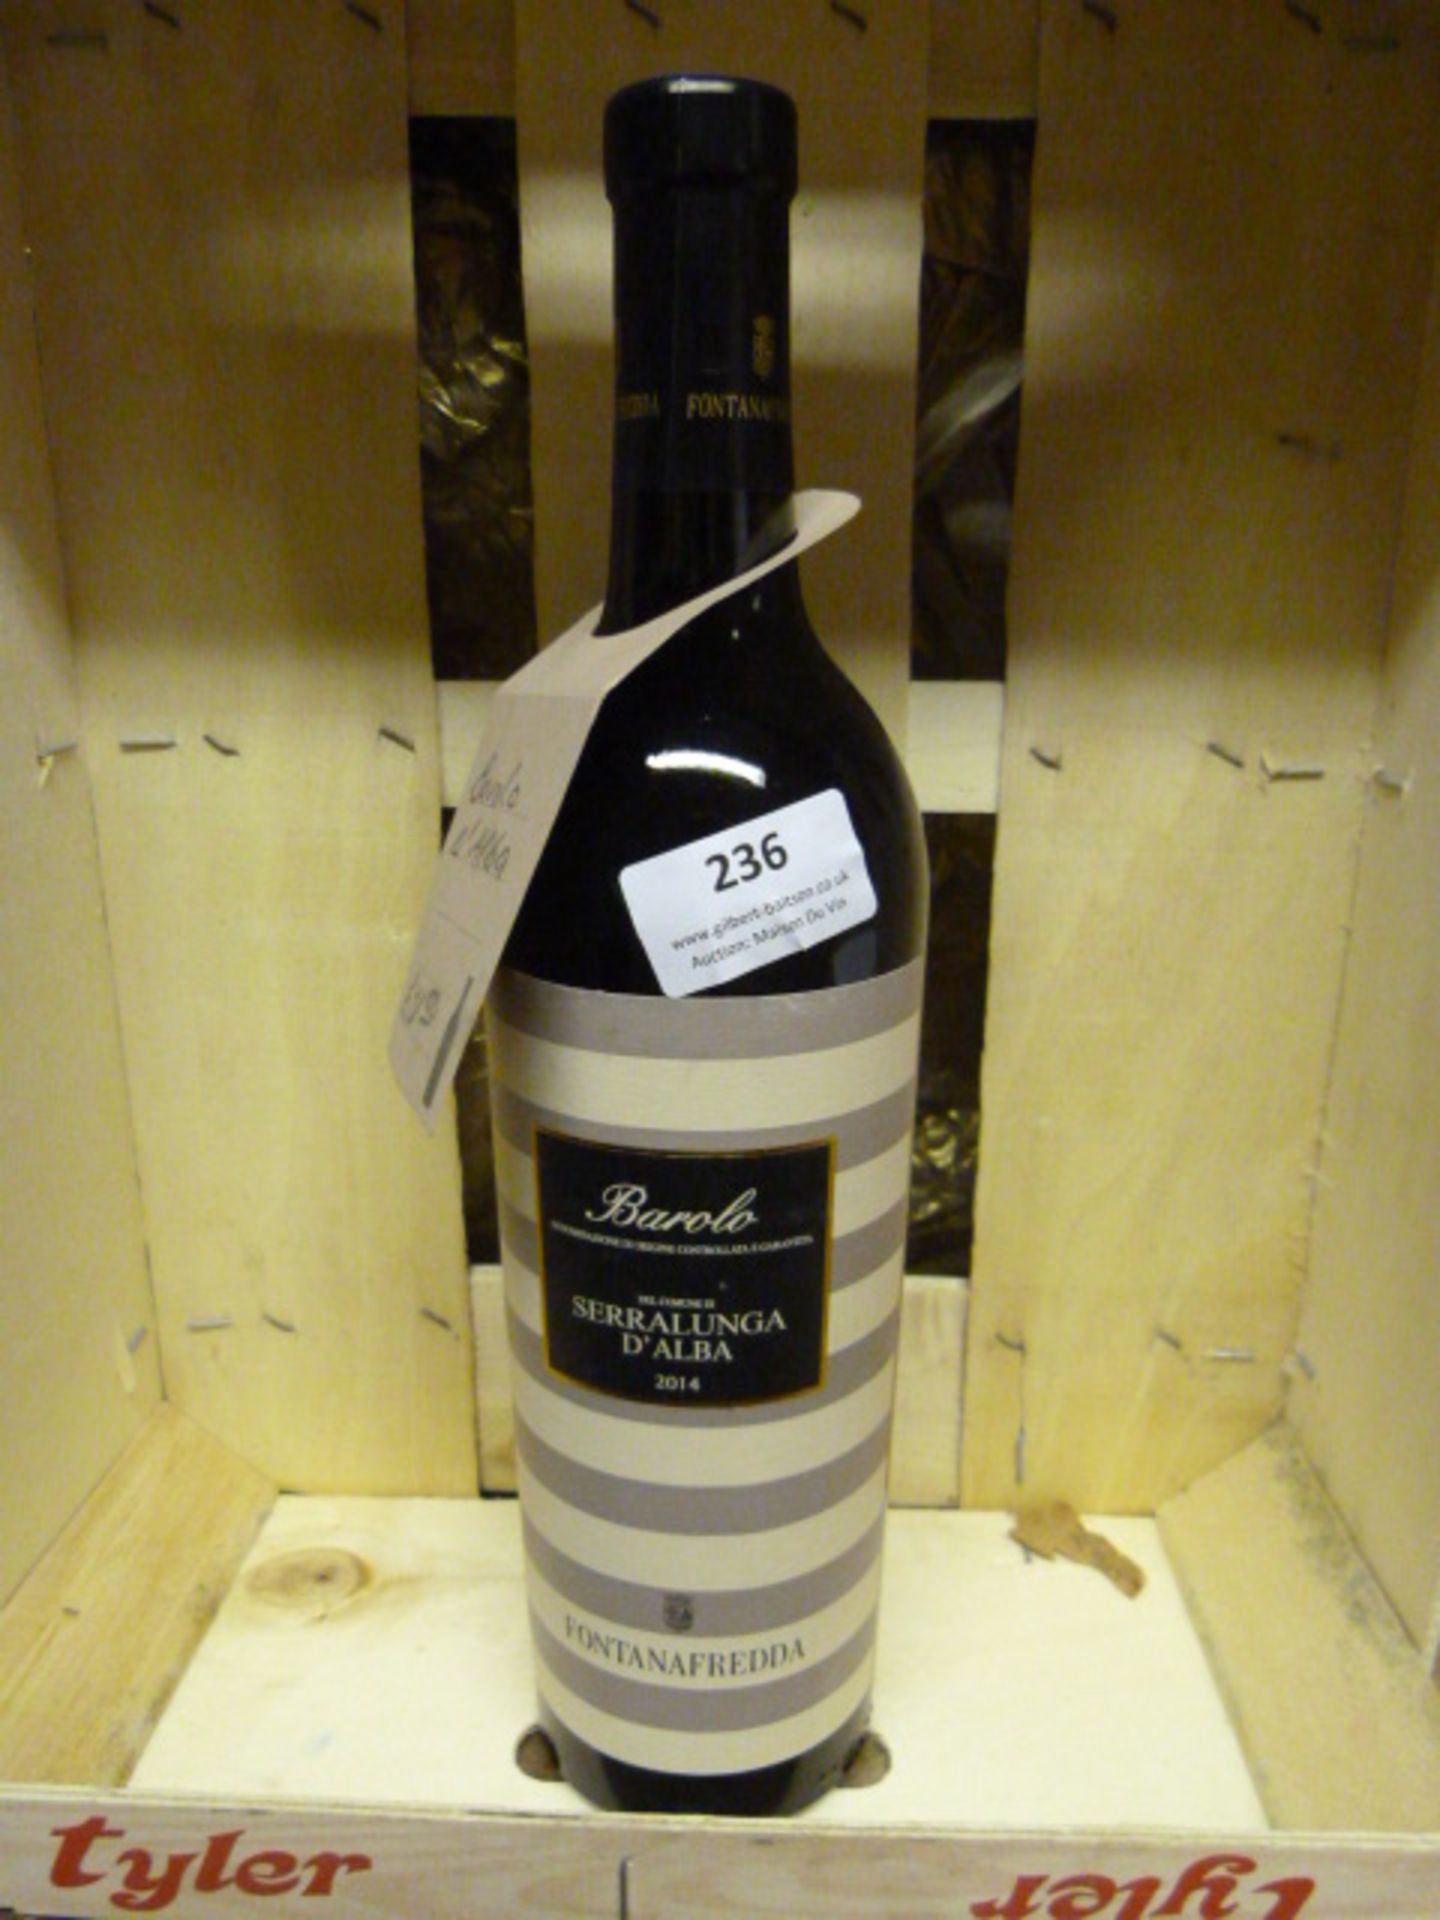 *75cl Bottle of Barolo Serralunga D'alba 2014